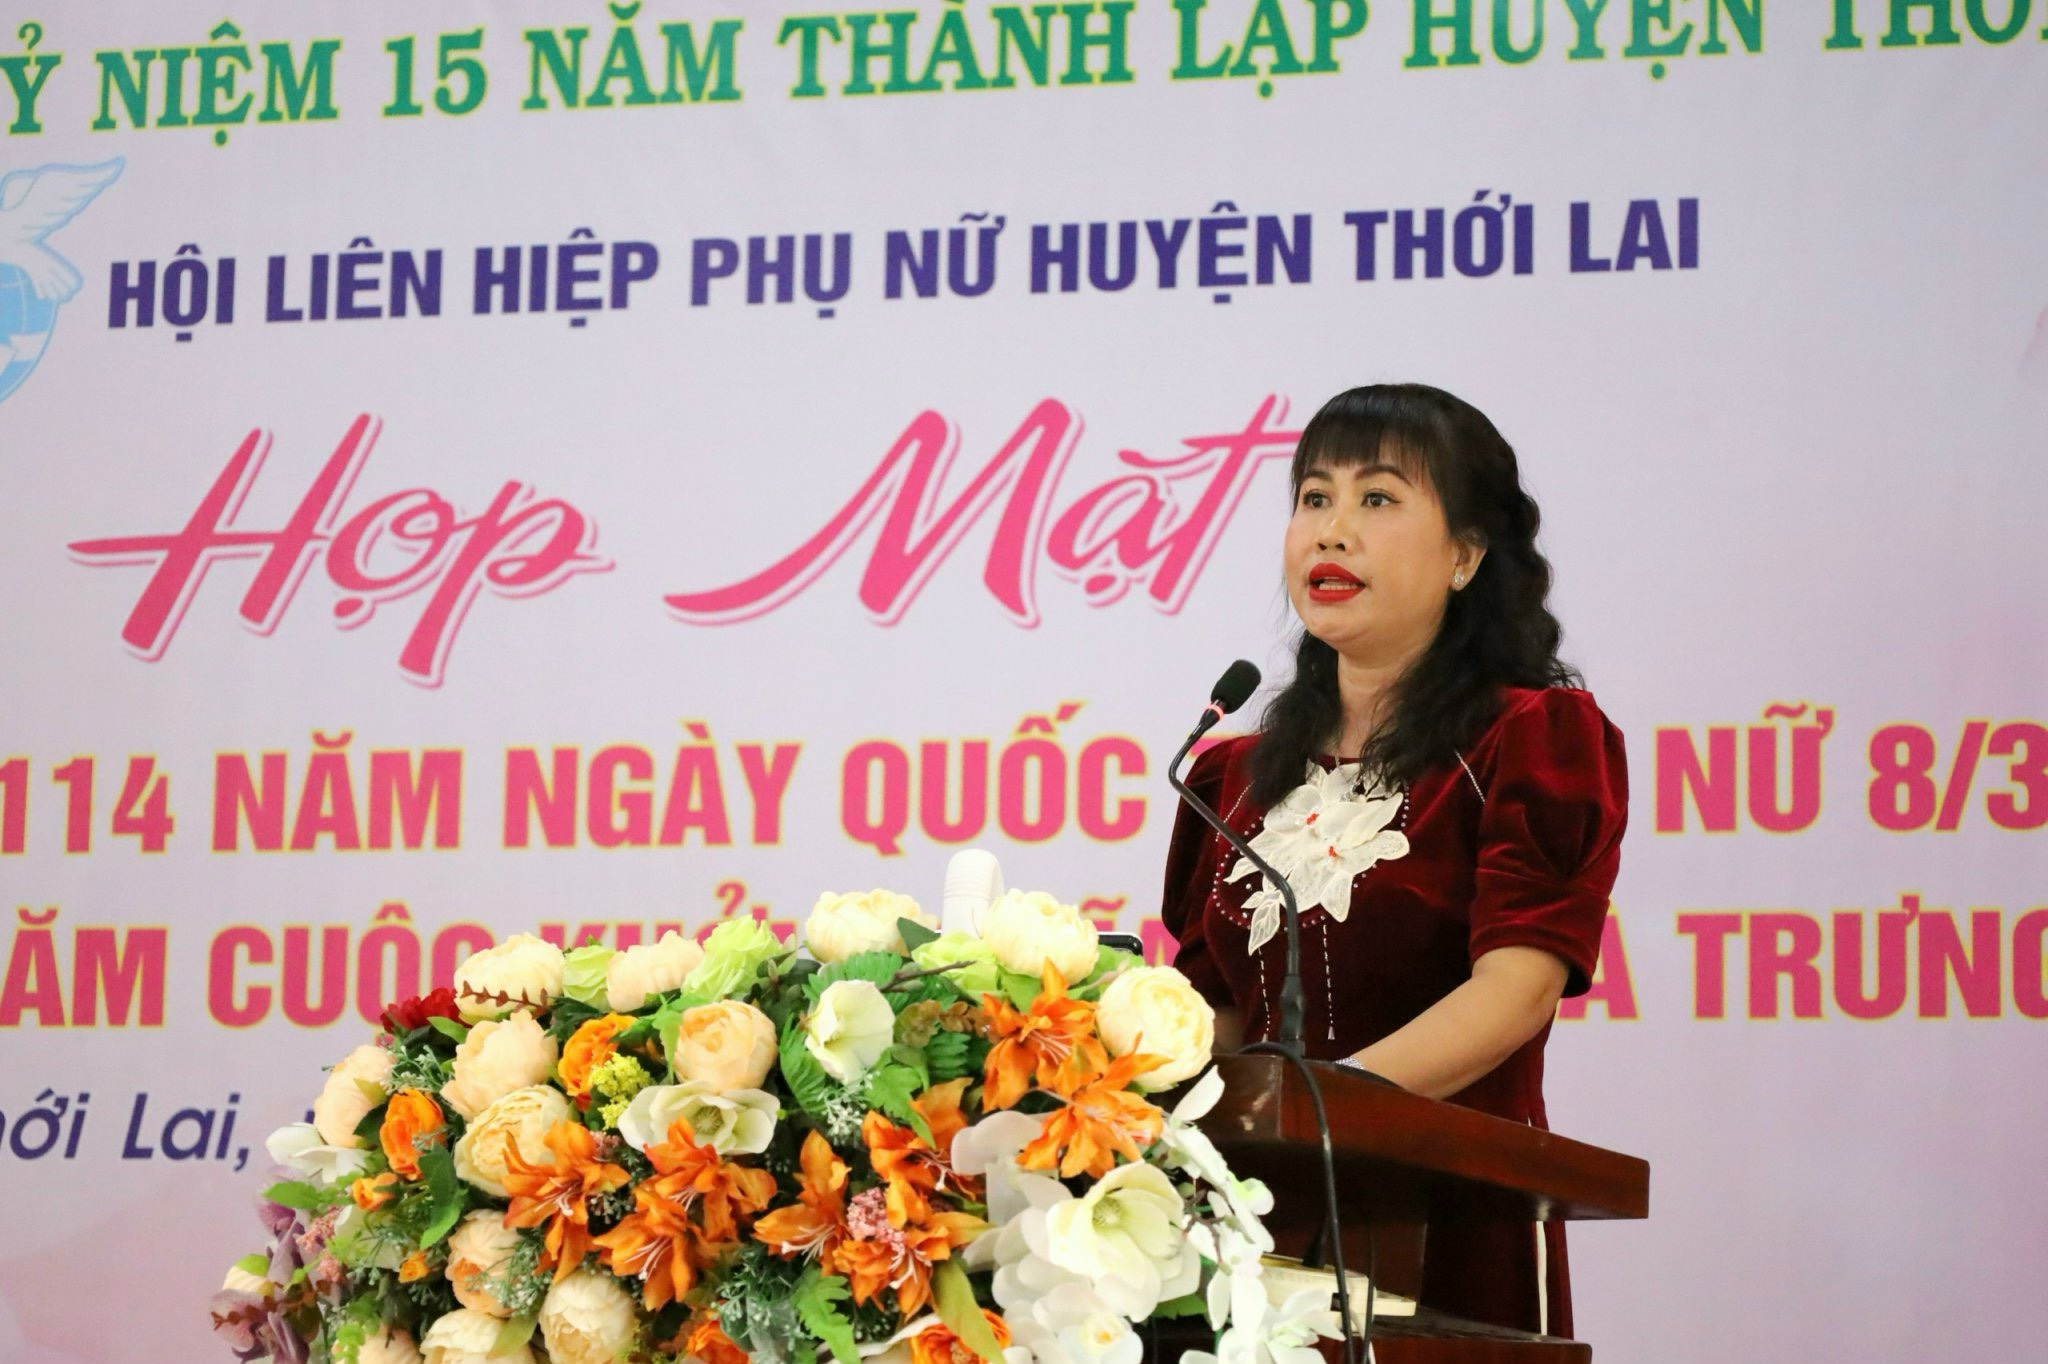 Bà Nguyễn Thị Ngọc Yến - Chủ tịch Hội LHPN huyện Thới Lai phát biểu ôn lại truyền thống tại buổi họp mặt.